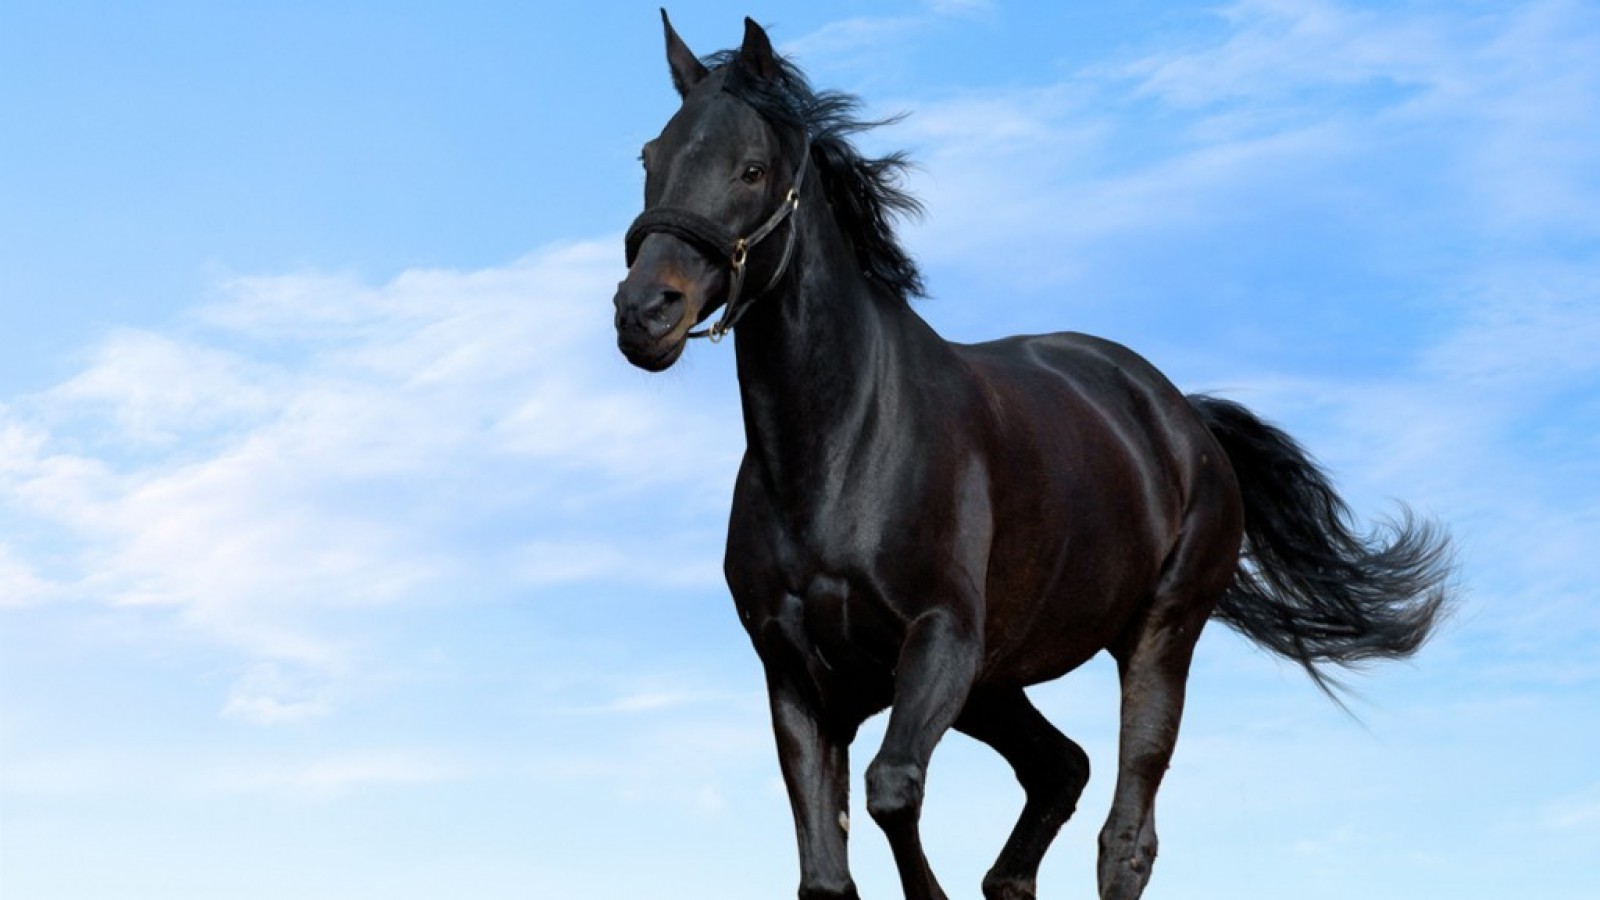 Black Horse HD Wallpaper Cool Desktop Background Image